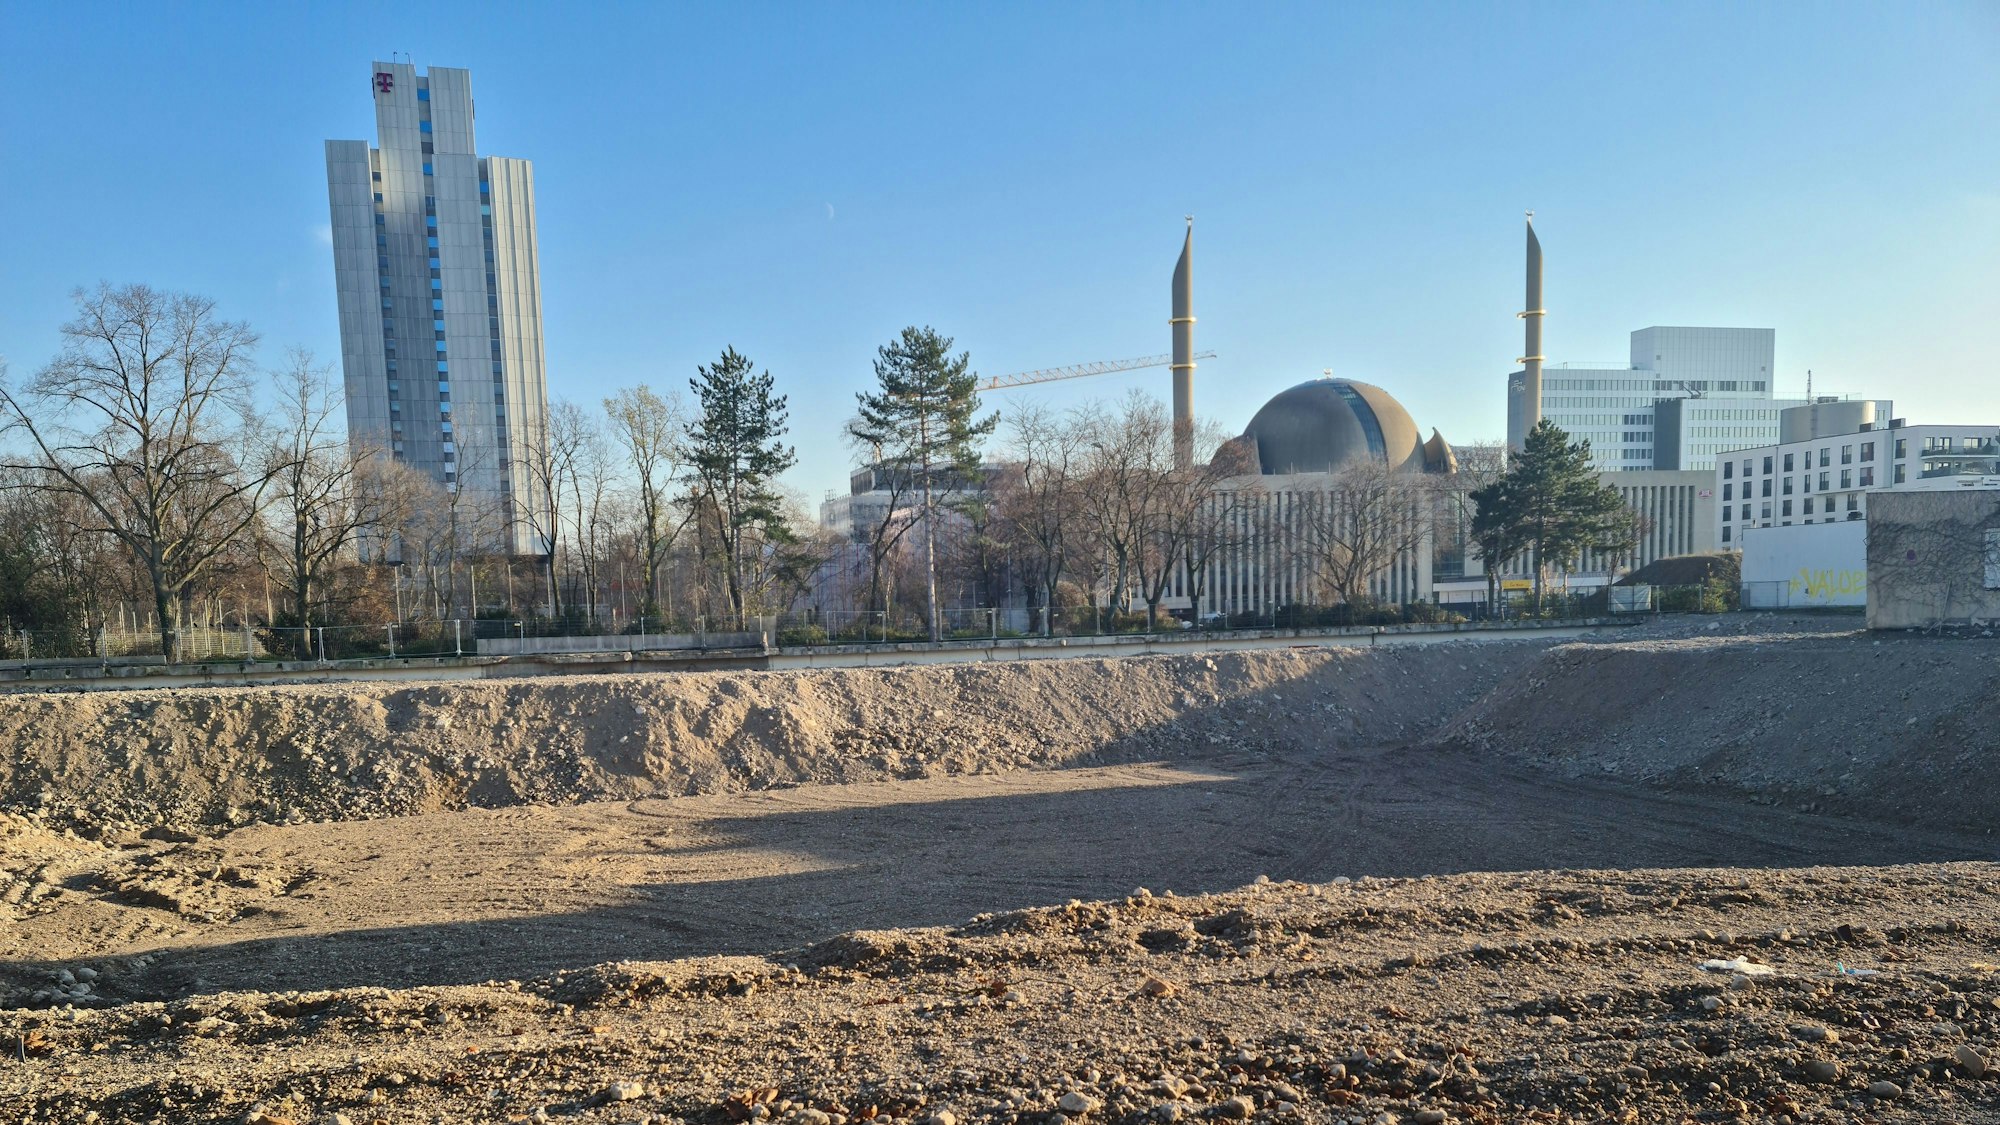 Vor dem Telekom-Hochhaus und der Moschee sieht man eine große freie Fläche.